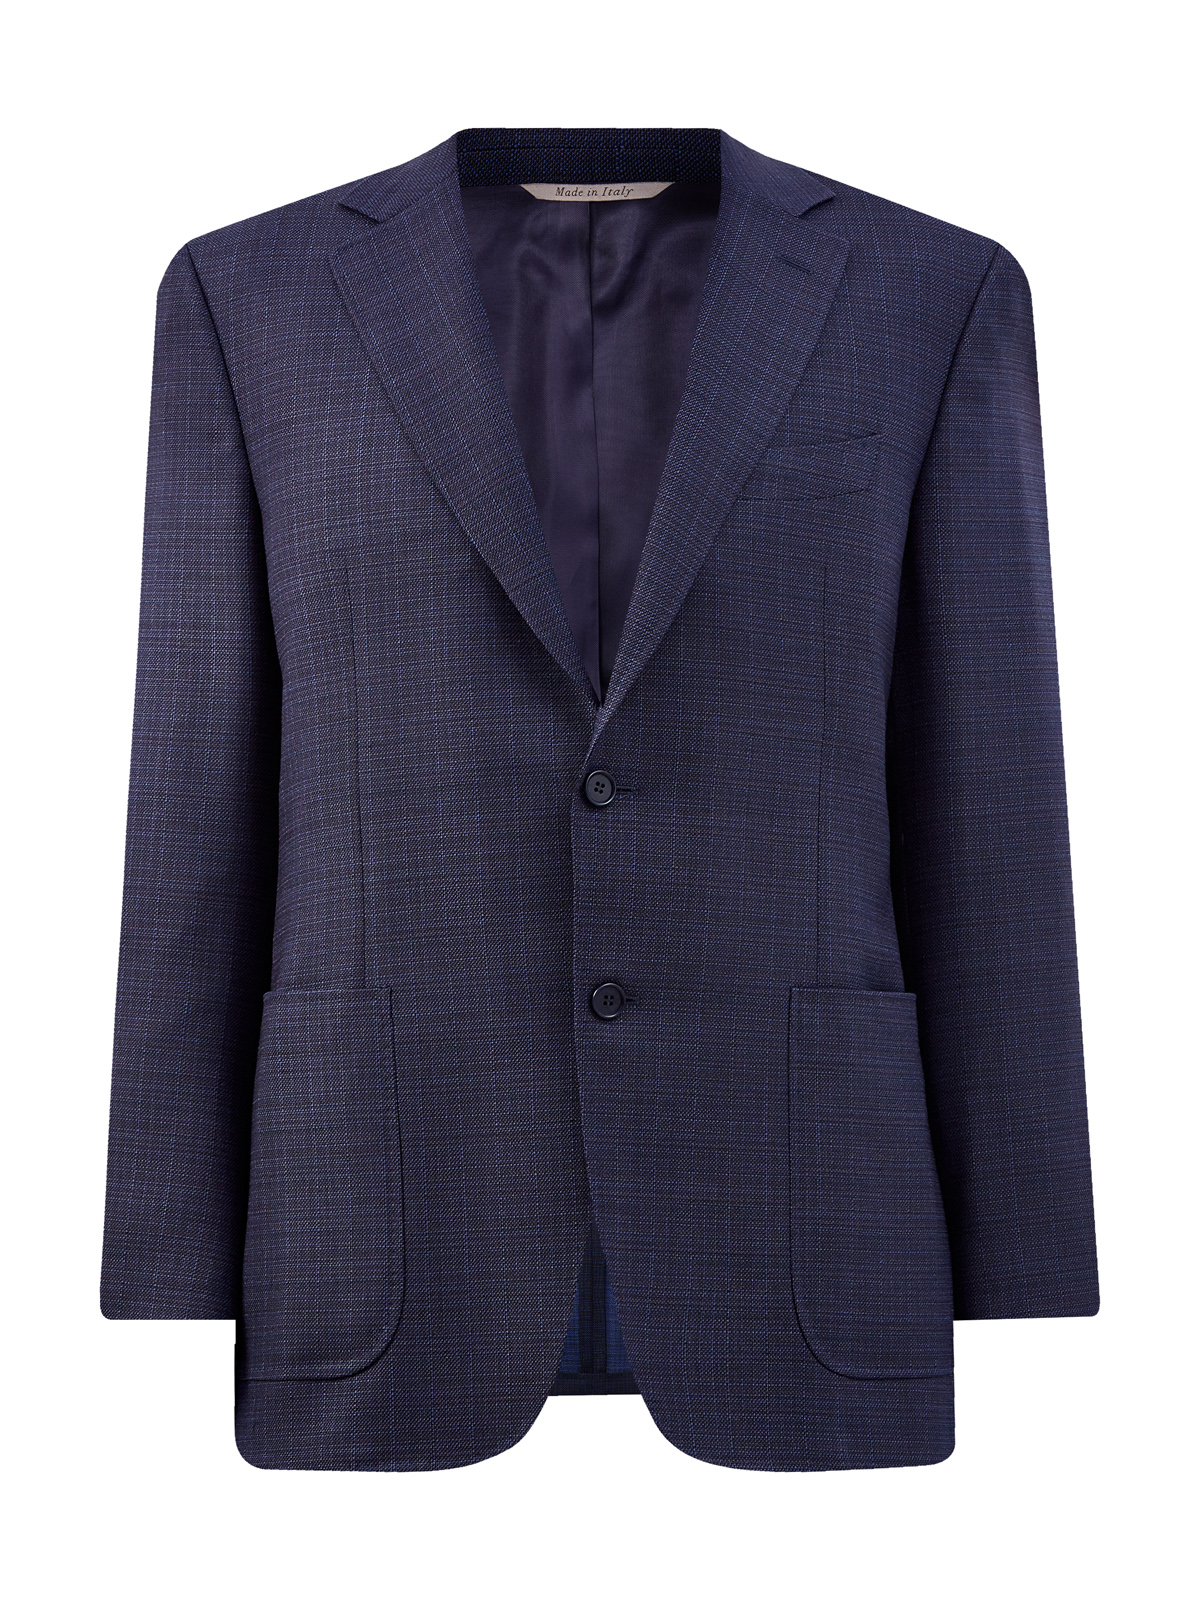 Однобортный пиджак из эластичной шерсти в тонкую клетку CANALI, цвет синий, размер 50;52;54;56 - фото 1